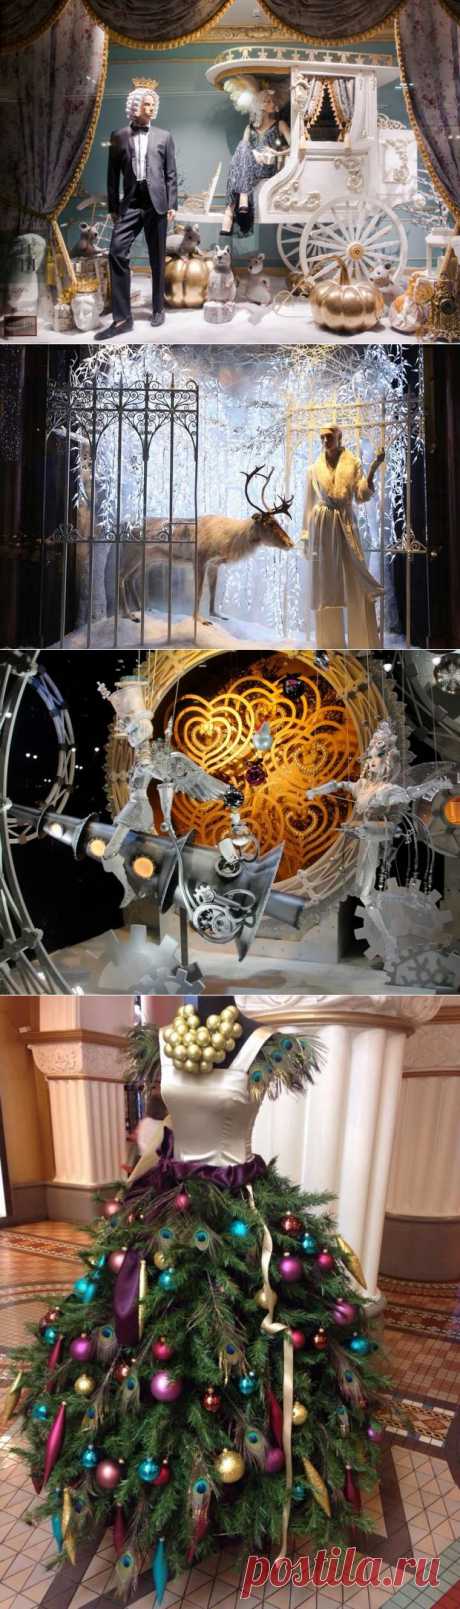 Новогодние витрины — сказка за стеклом - Ярмарка Мастеров - ручная работа, handmade